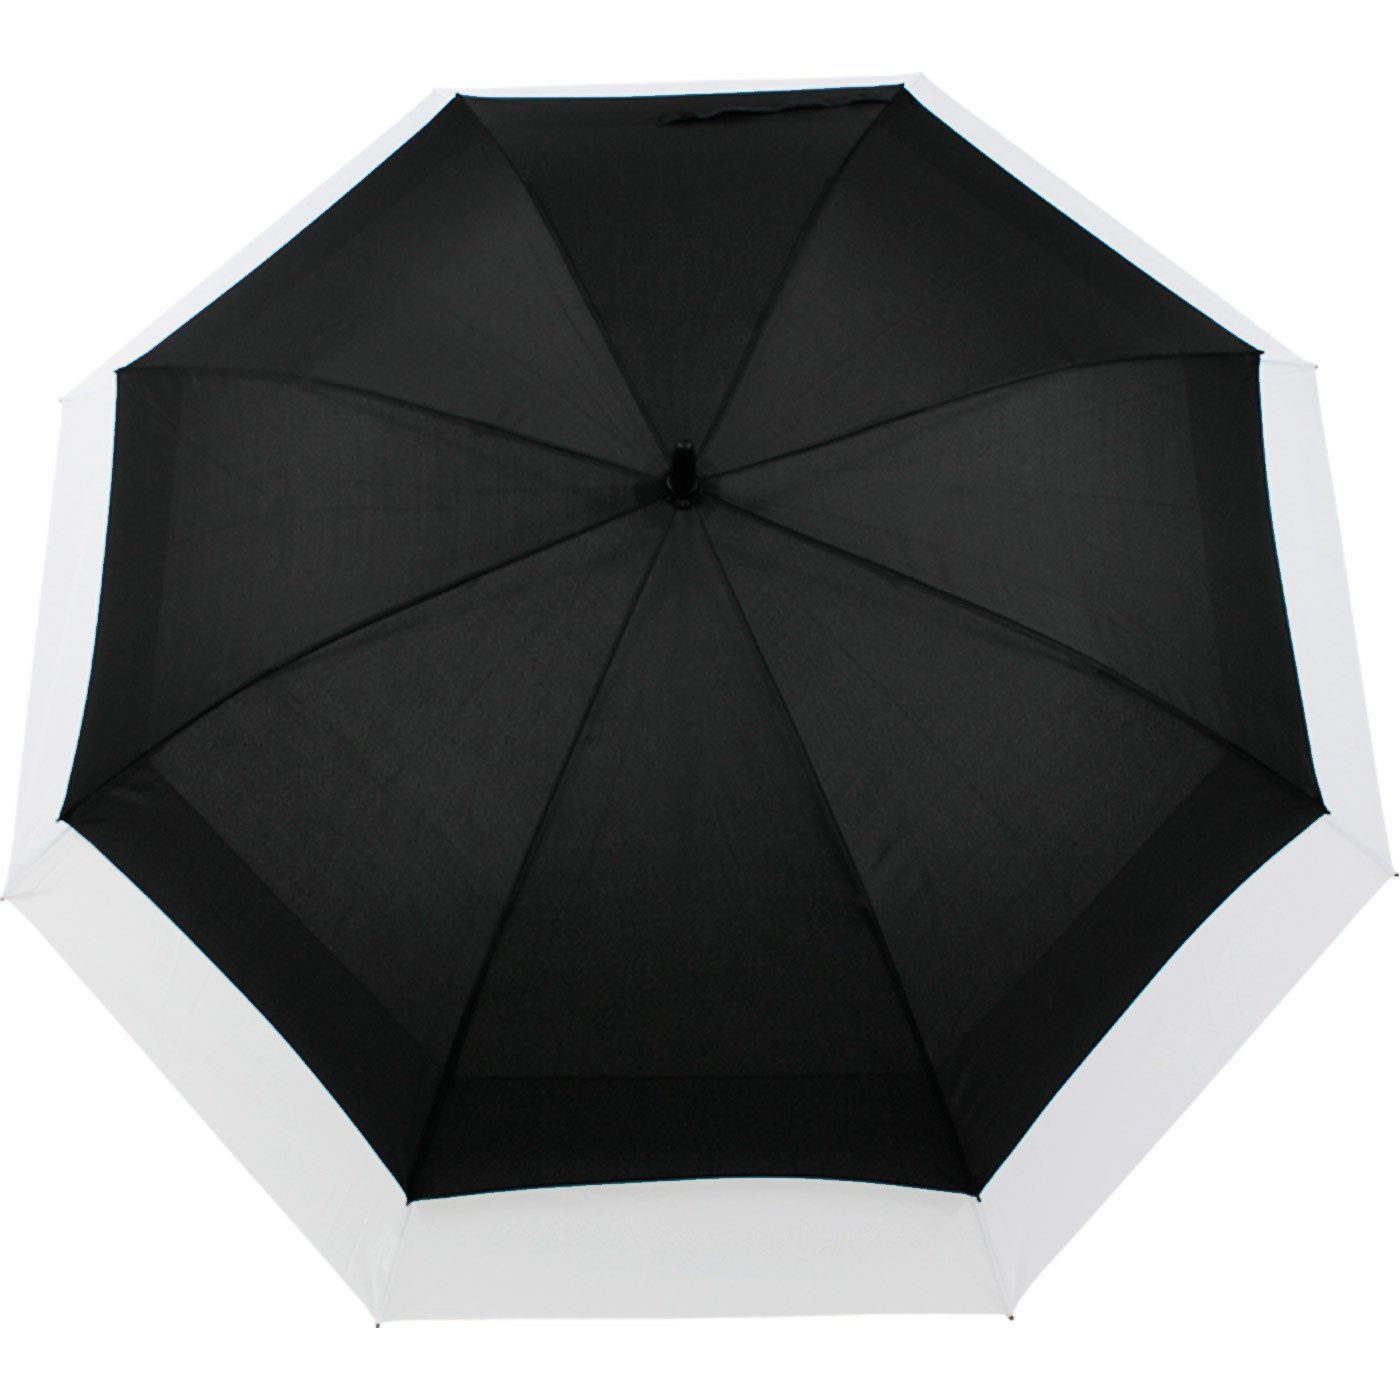 iX-brella Langregenschirm Move to mit XXL expandierender schwarz-weiß Automatik, zweifarbig - Schirm